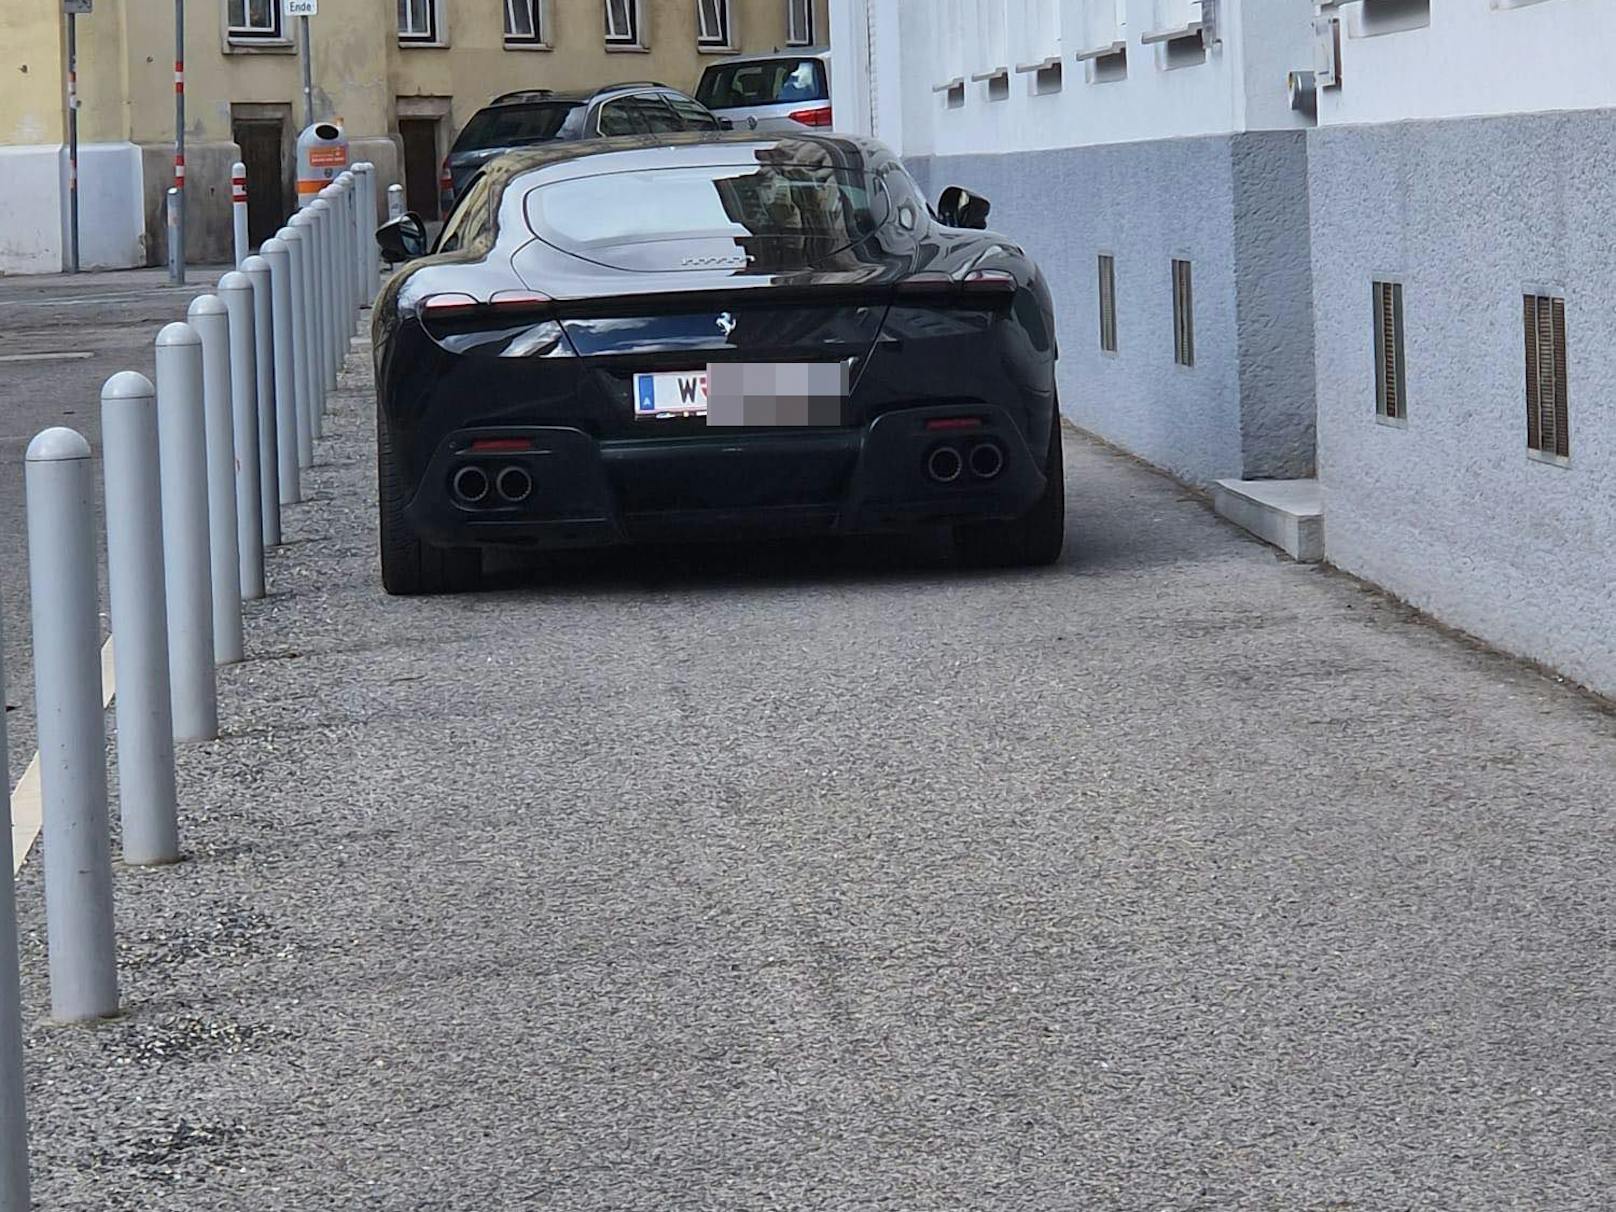 Passanten wunderten sich über dieses Luxus-Auto in Rudolfsheim-Fünfhaus.